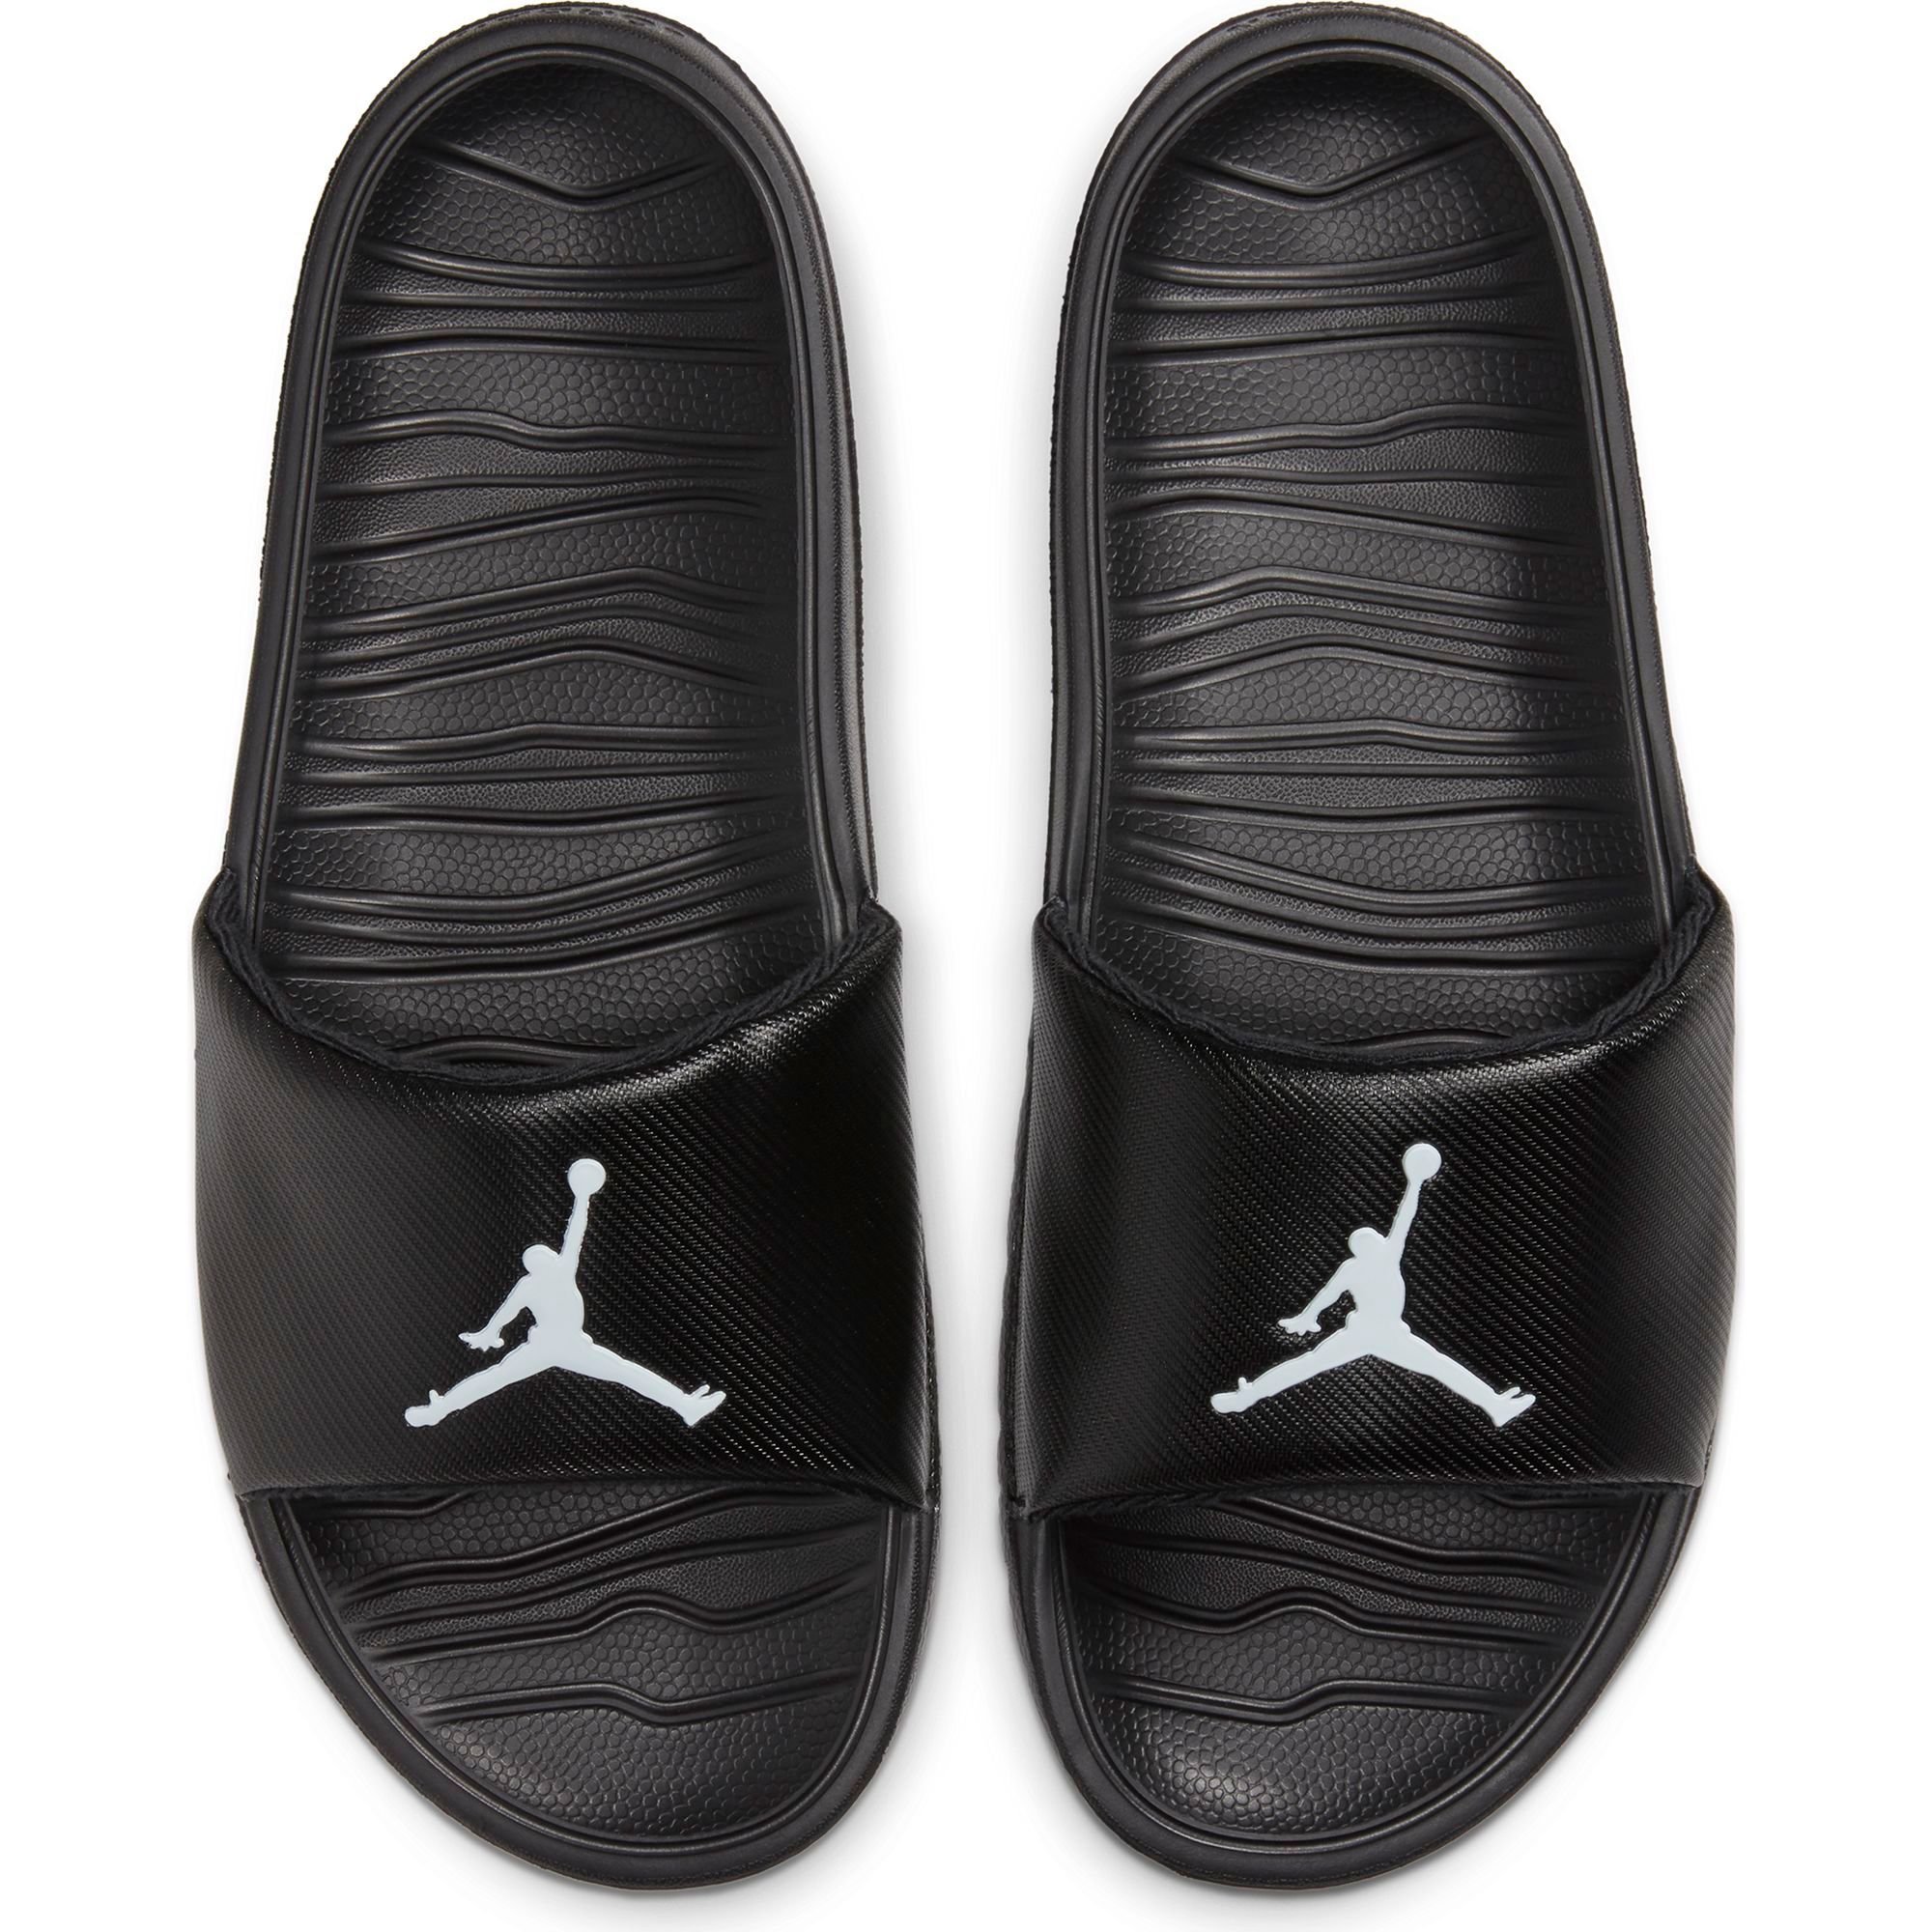 Jordan Break Slides Black/White